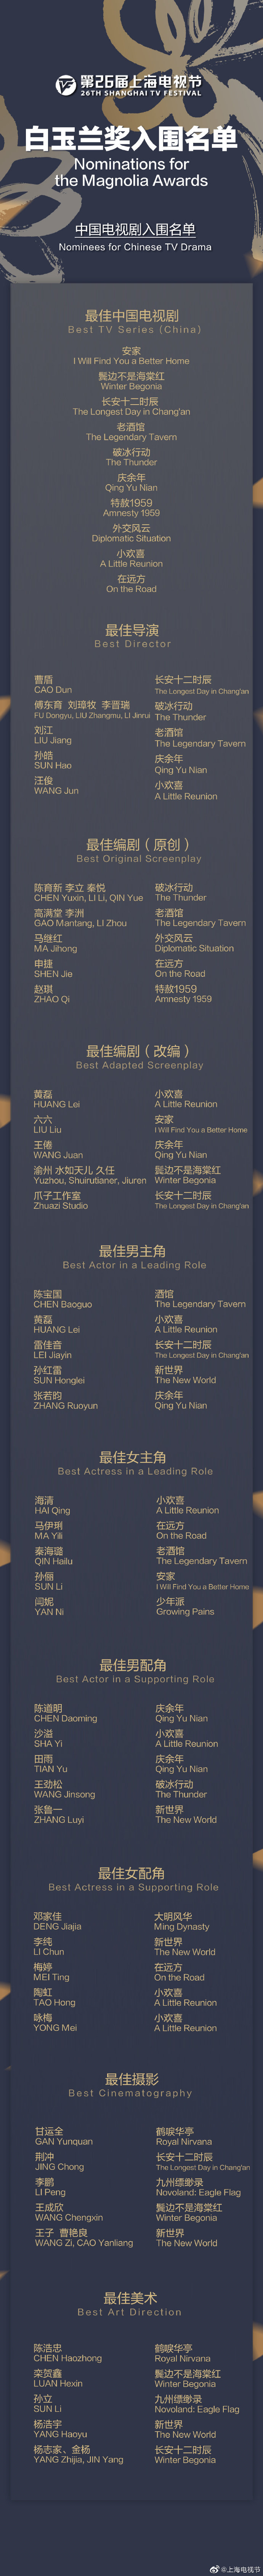 上海電視節白玉蘭獎入圍名單公布 《長安十二時辰》《慶余年》等將角逐最佳電視劇獎